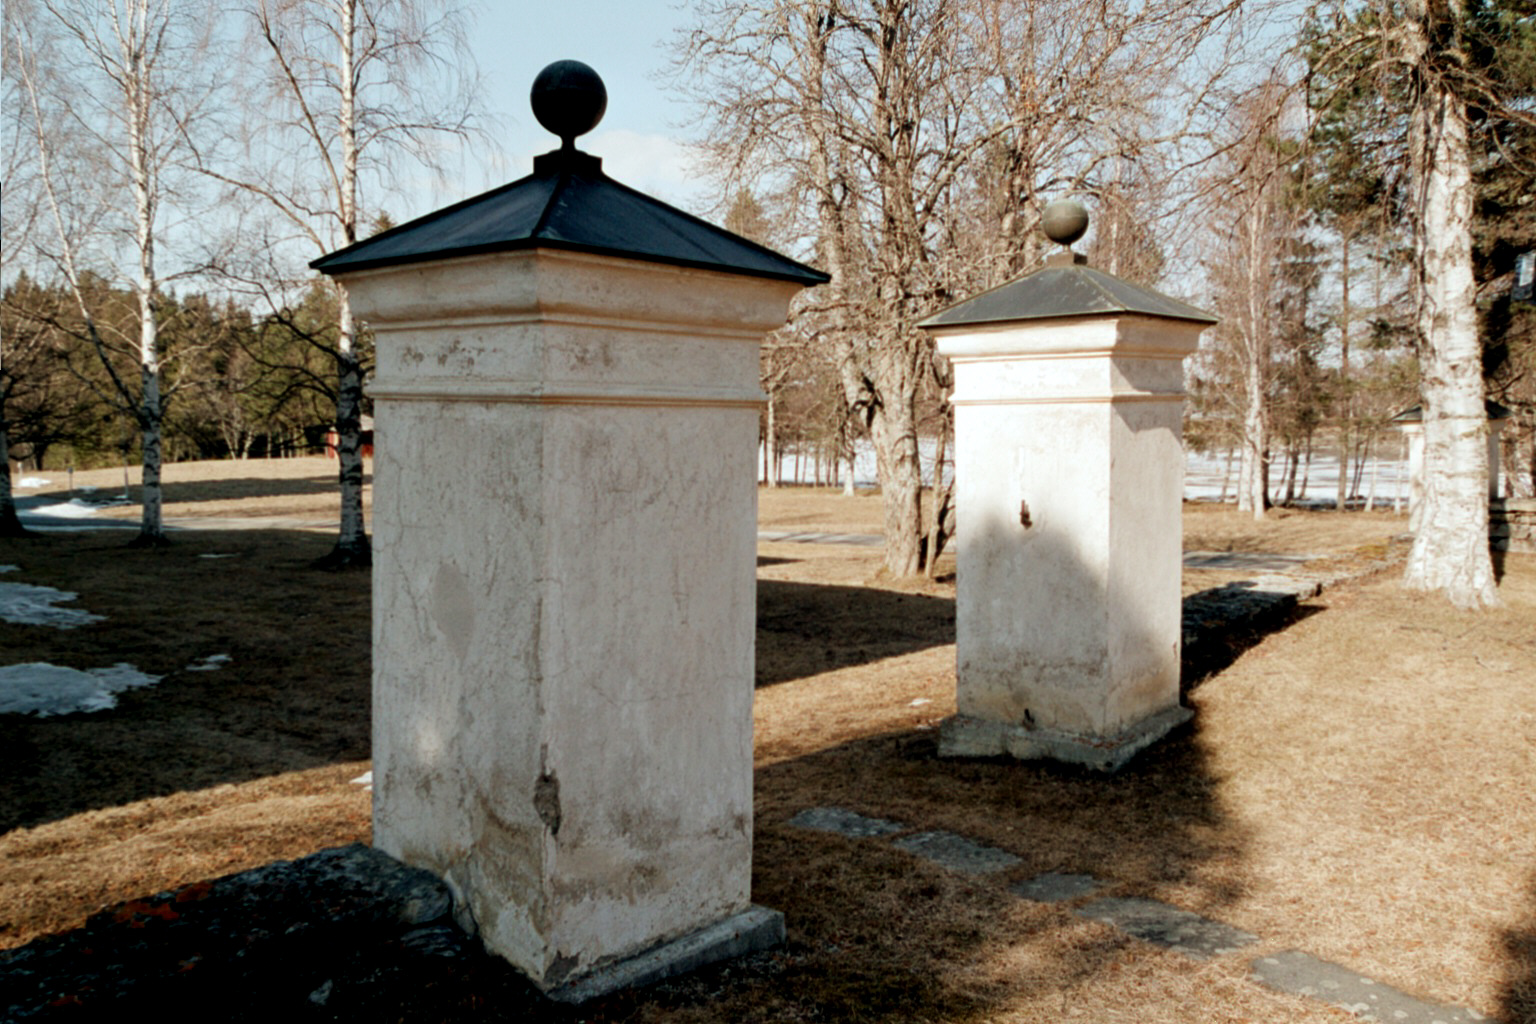 Sunne kyrkas kyrkogård, stigportar. 

Kyrkogården är mycket stor och omgärdas av en bogårdsmur av skiffer med flera vitputsade kvadratiska stigportar, samt av häckar